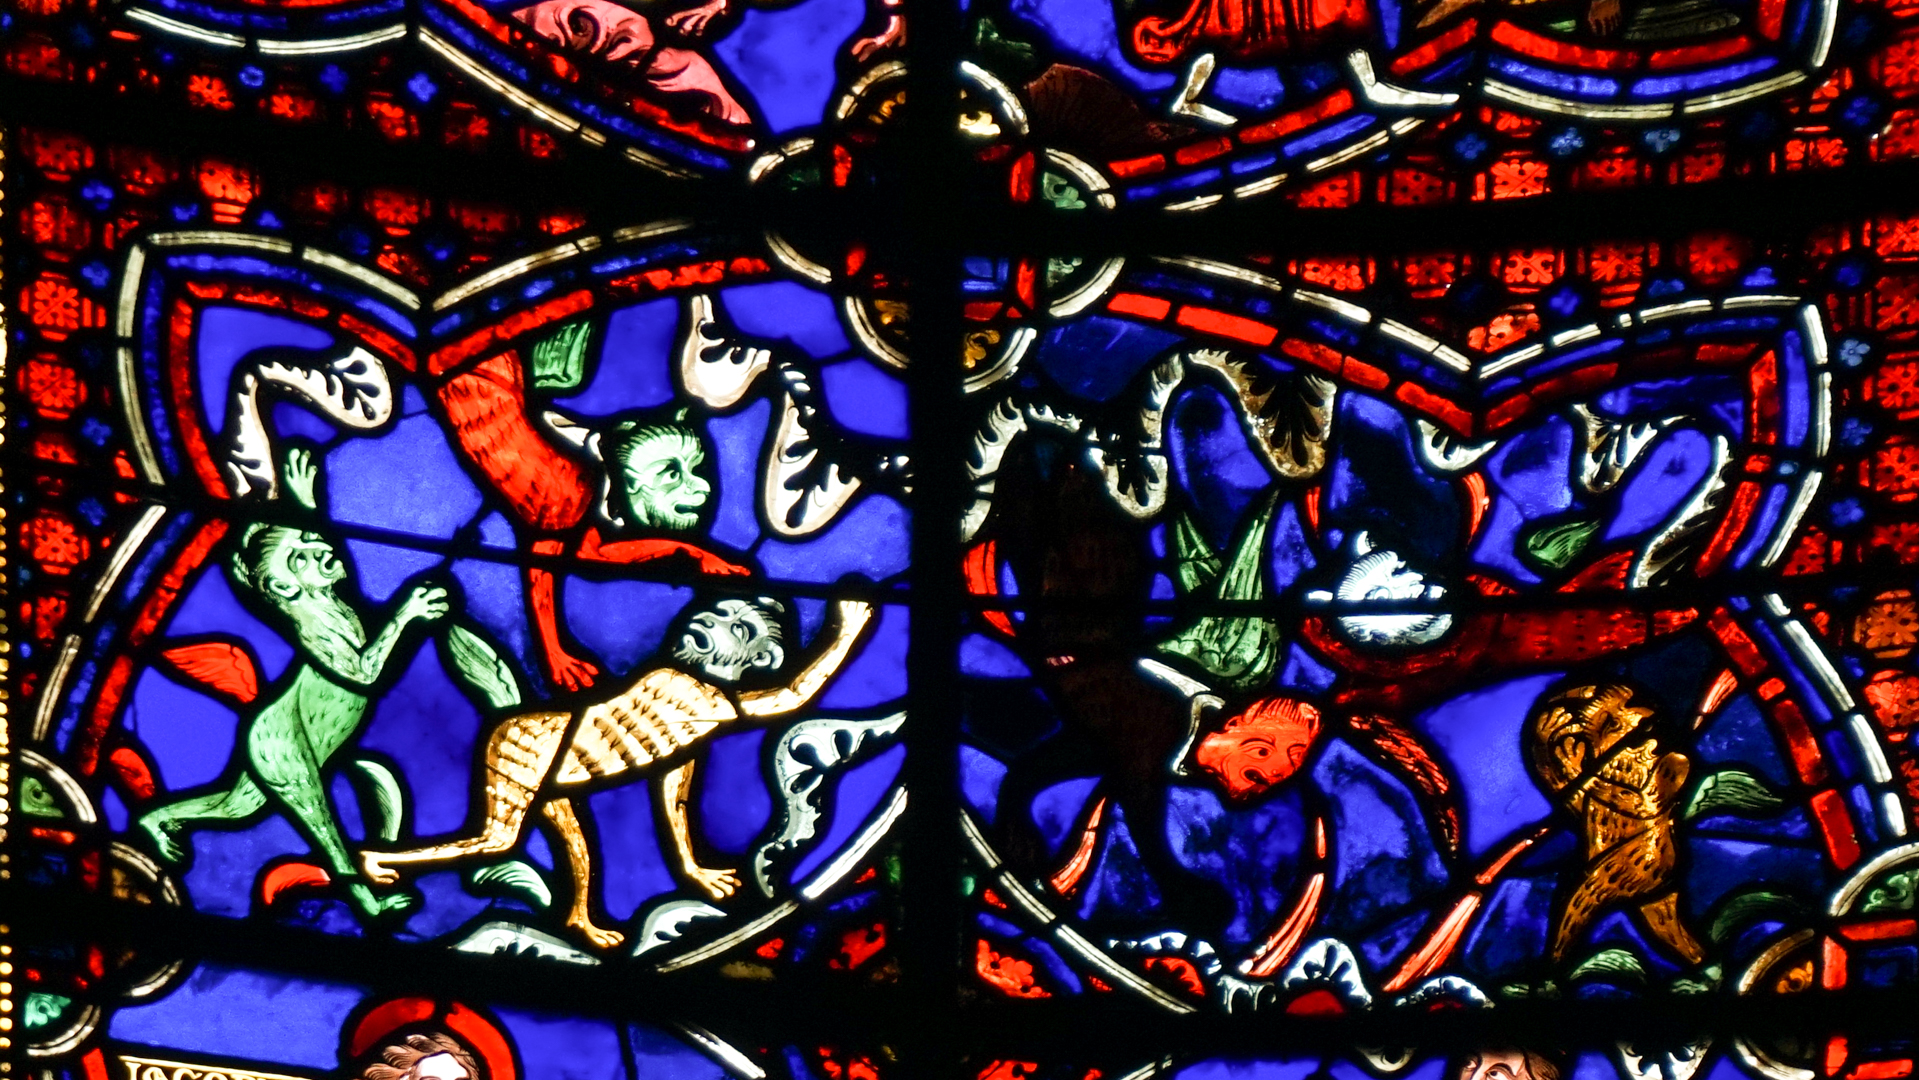 La ronde des démons vitrail de la Cathédrale de Bourges © Maurice Page 